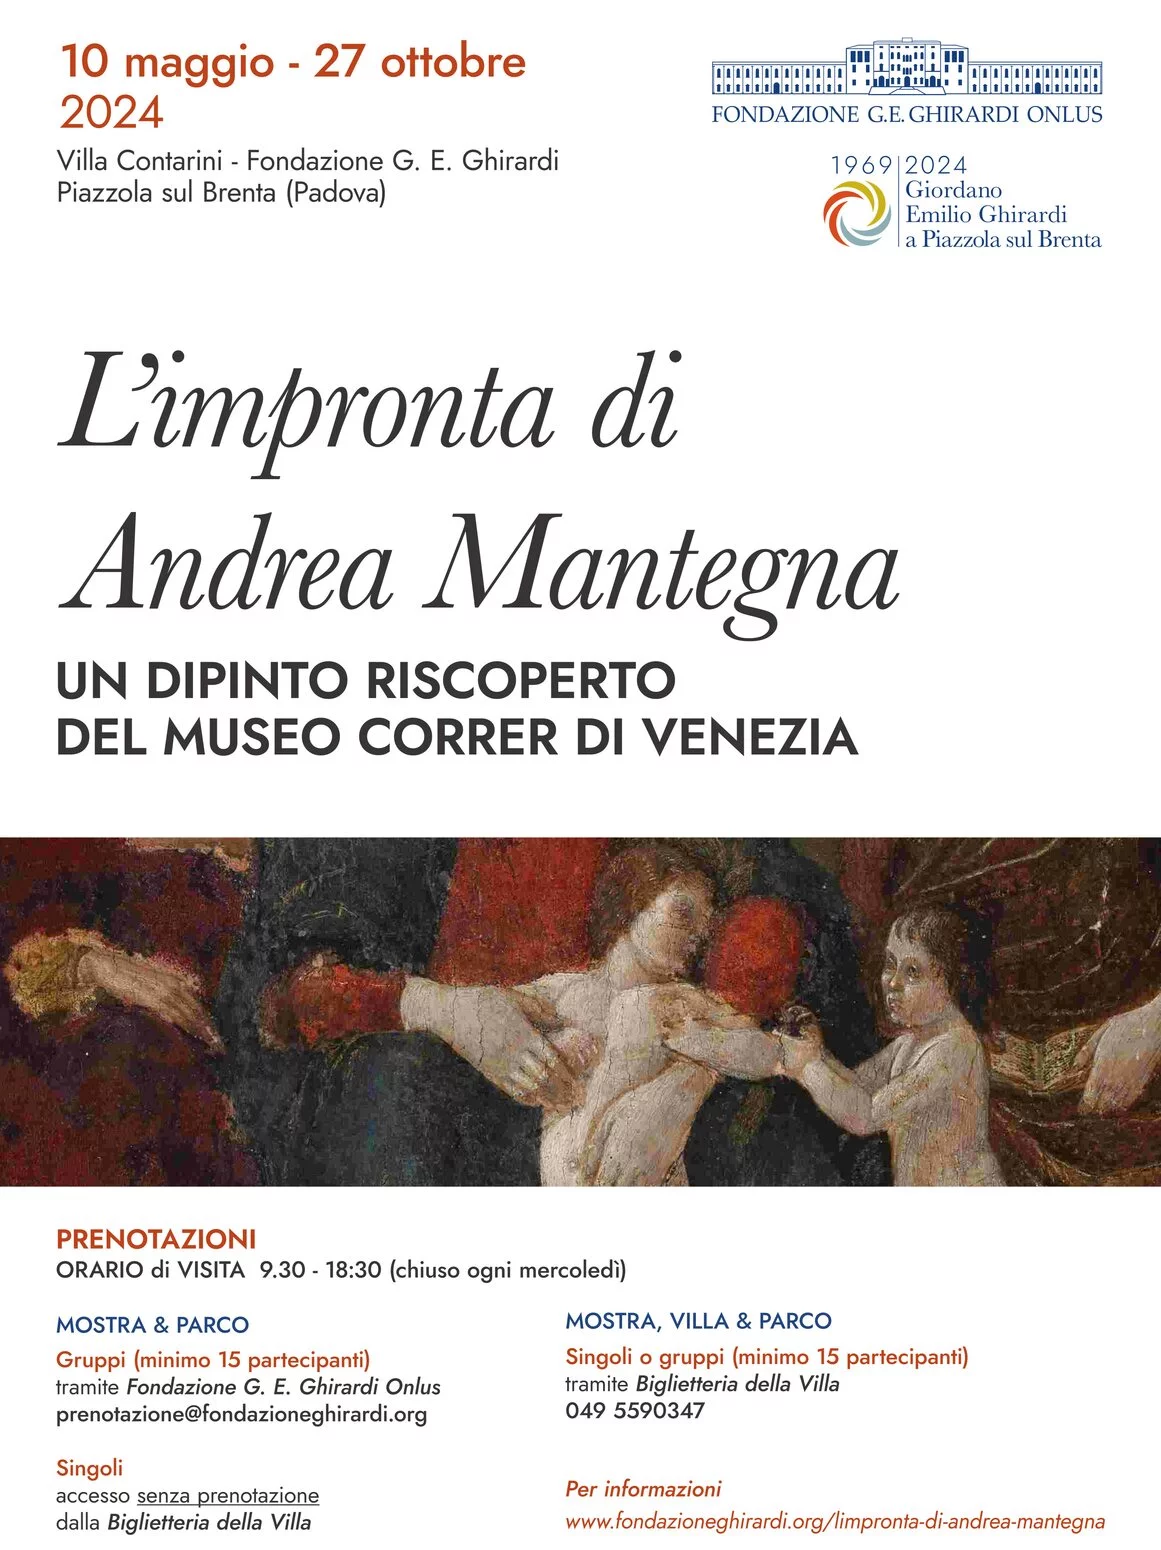 L'impronta di Andrea Mantegna. Un dipinto riscoperto del Museo Correr di Venezia